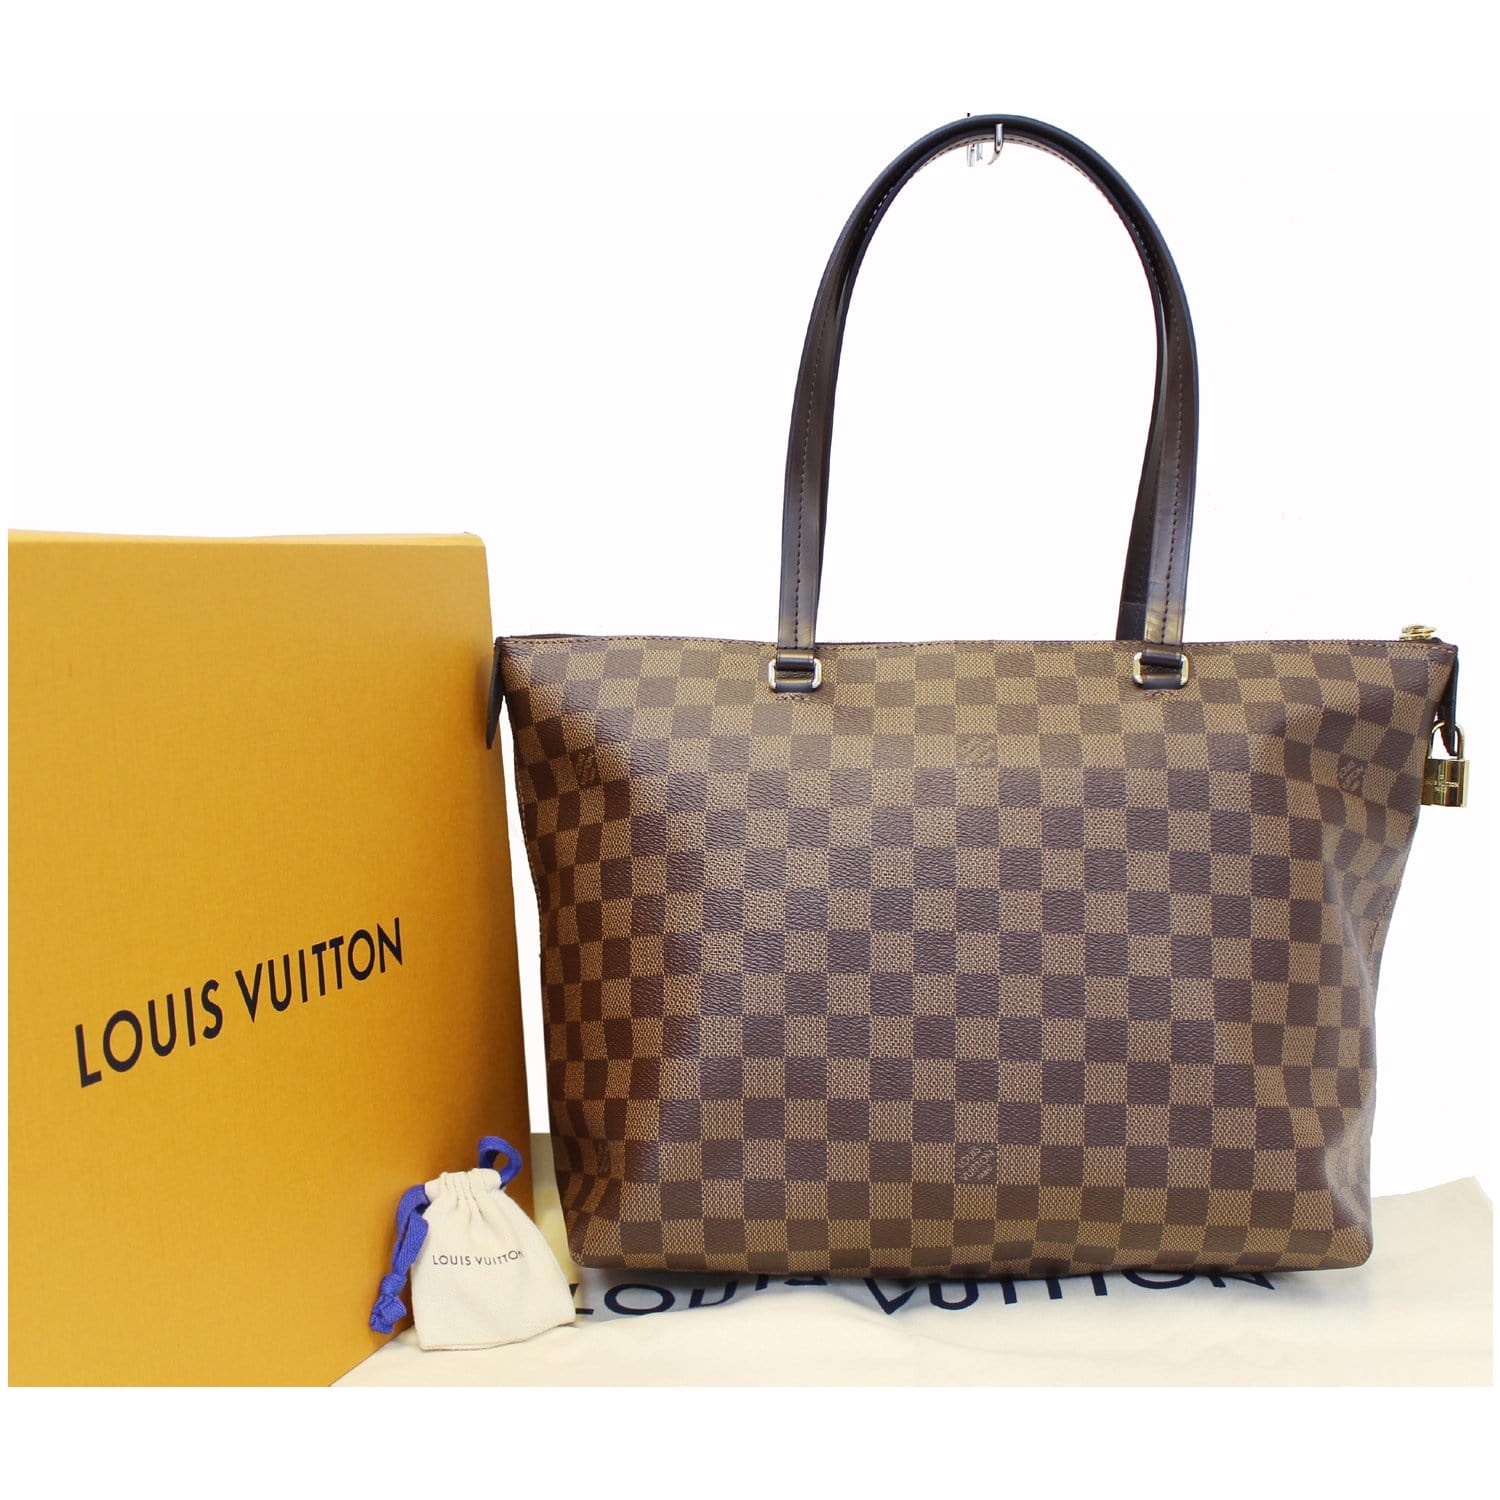 Authentic Louis Vuitton Damier Ebene Canvas Odéon PM Tote Bag